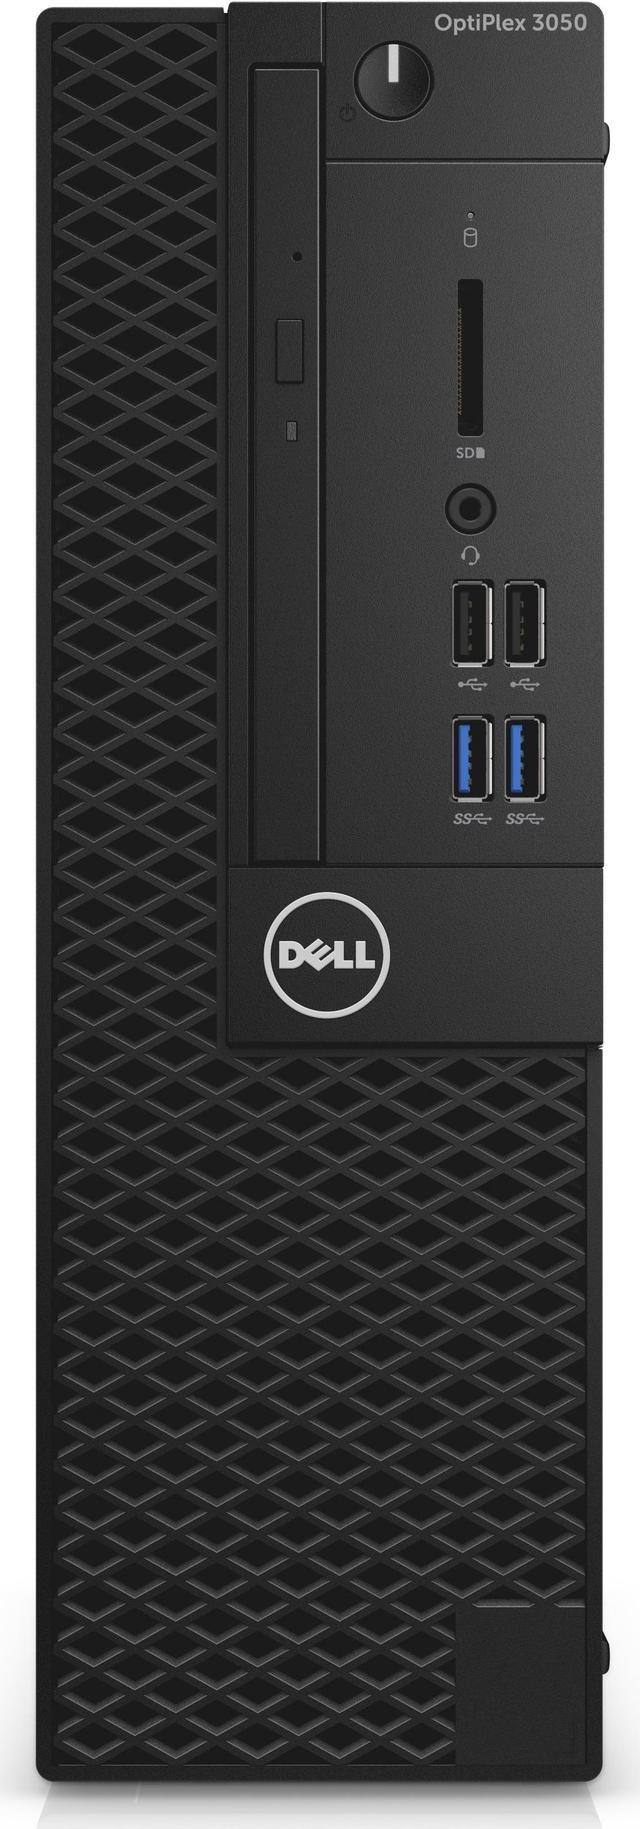 Refurbished: Dell Optiplex 3050 Intel Core i7-6700 X4 3.4GHz 16GB